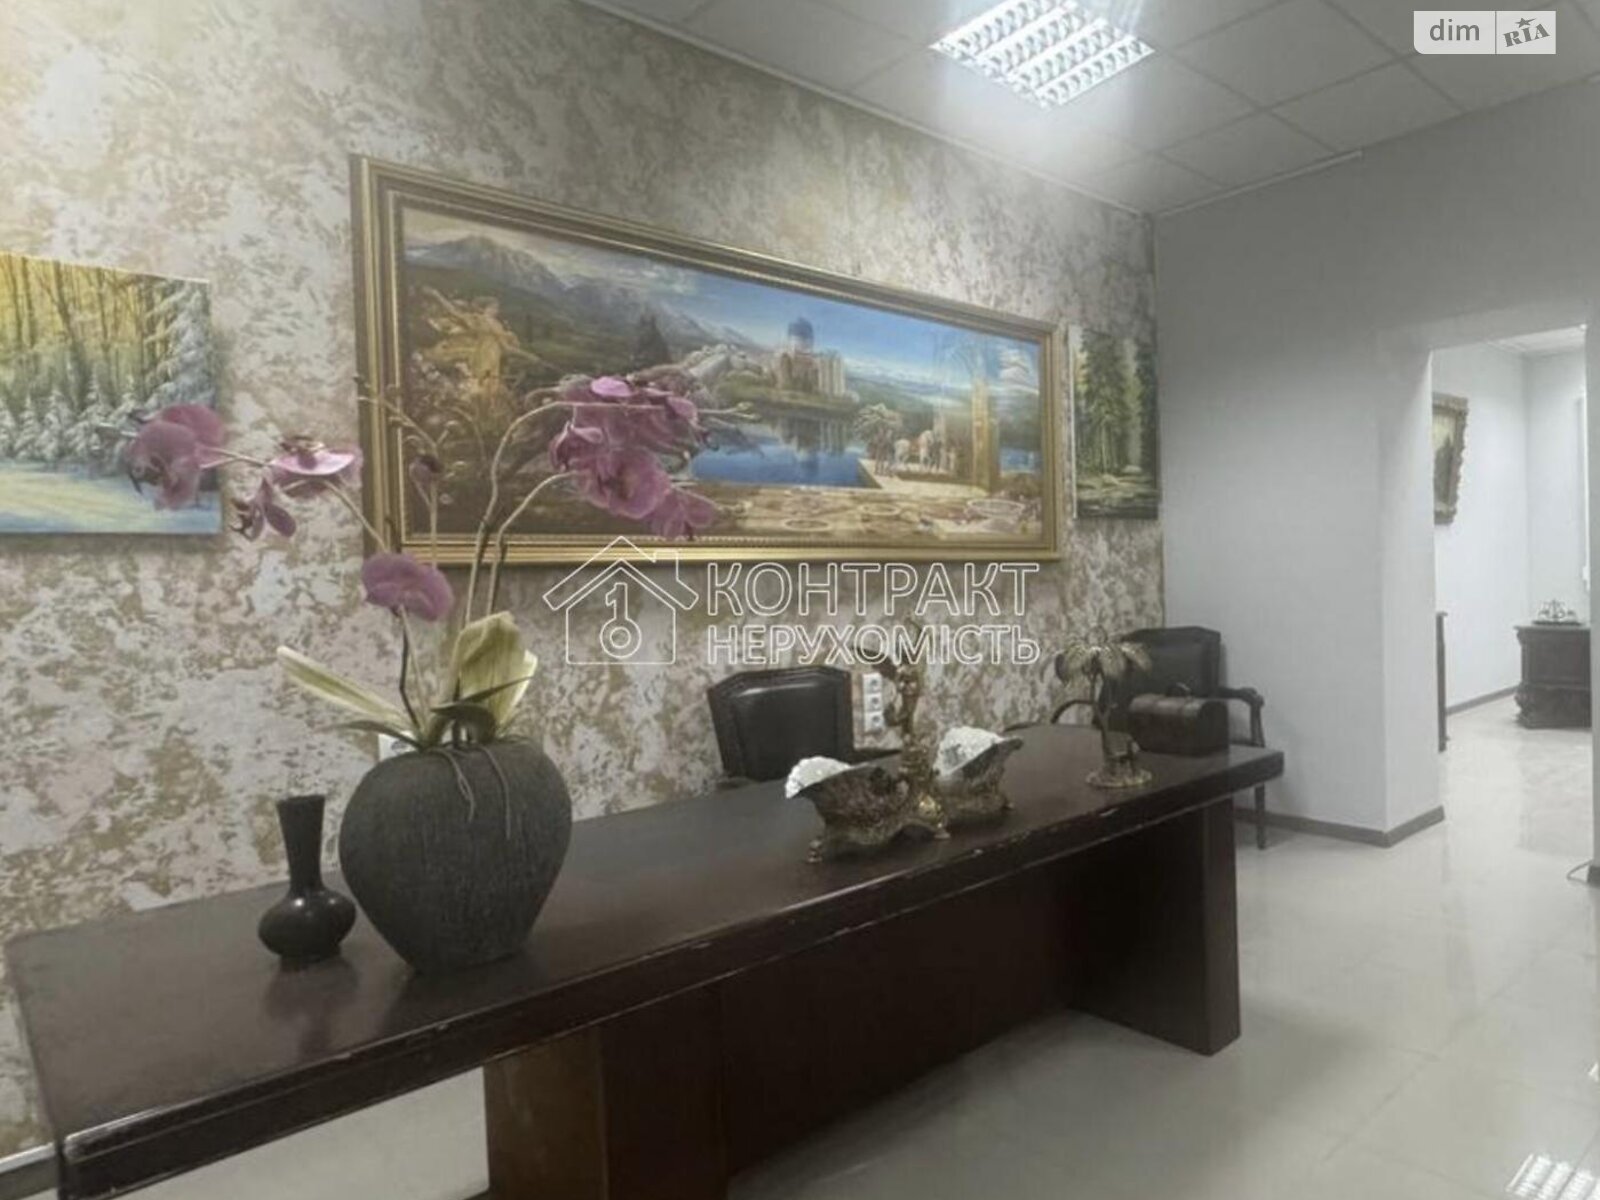 Аренда офисного помещения в Харькове, Максимилиановская улица 7, помещений -, этаж - 1 фото 1